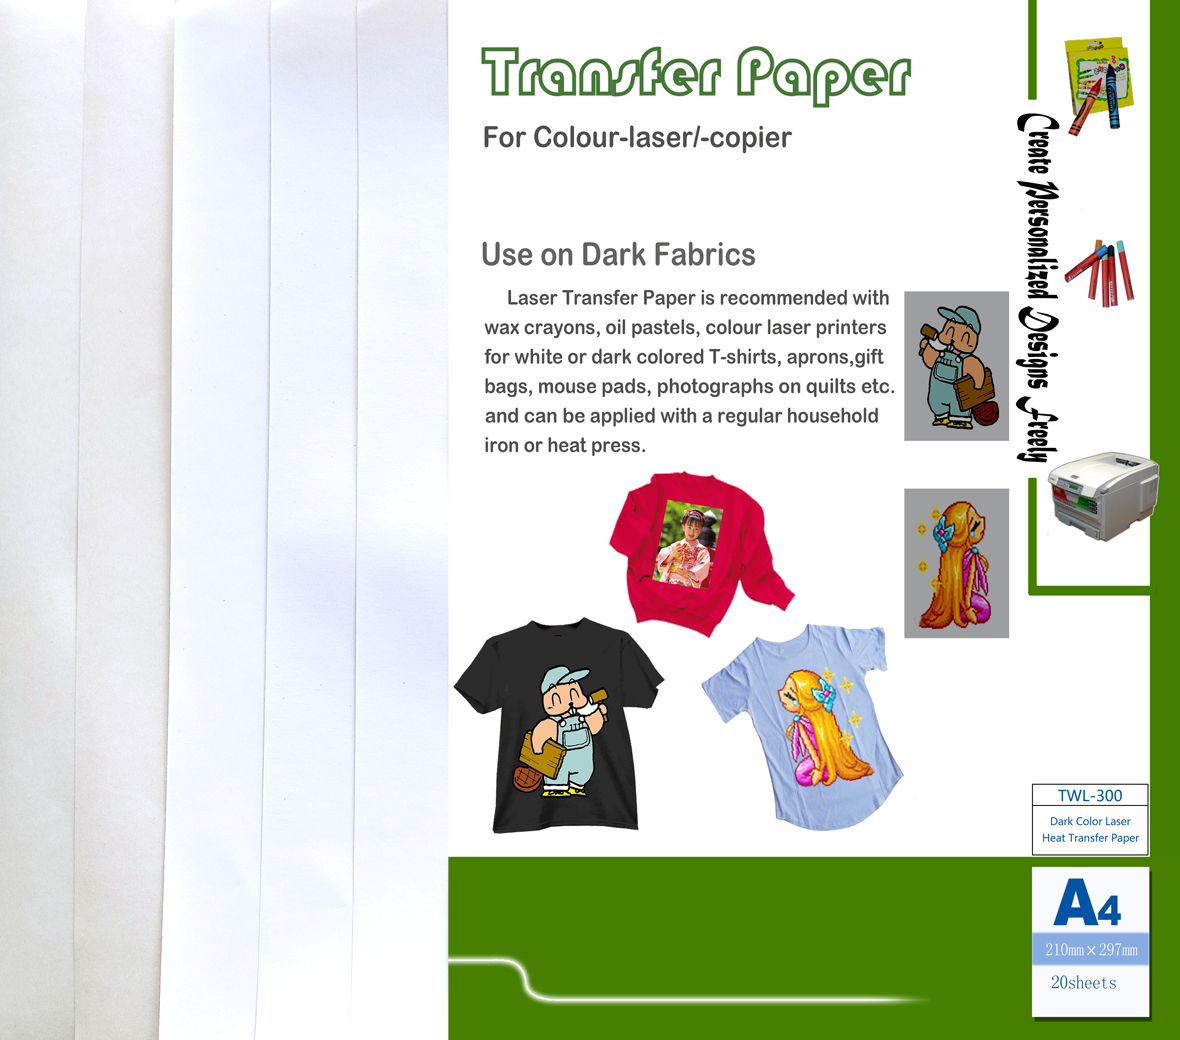 Dark Color Laser Transfer Paper